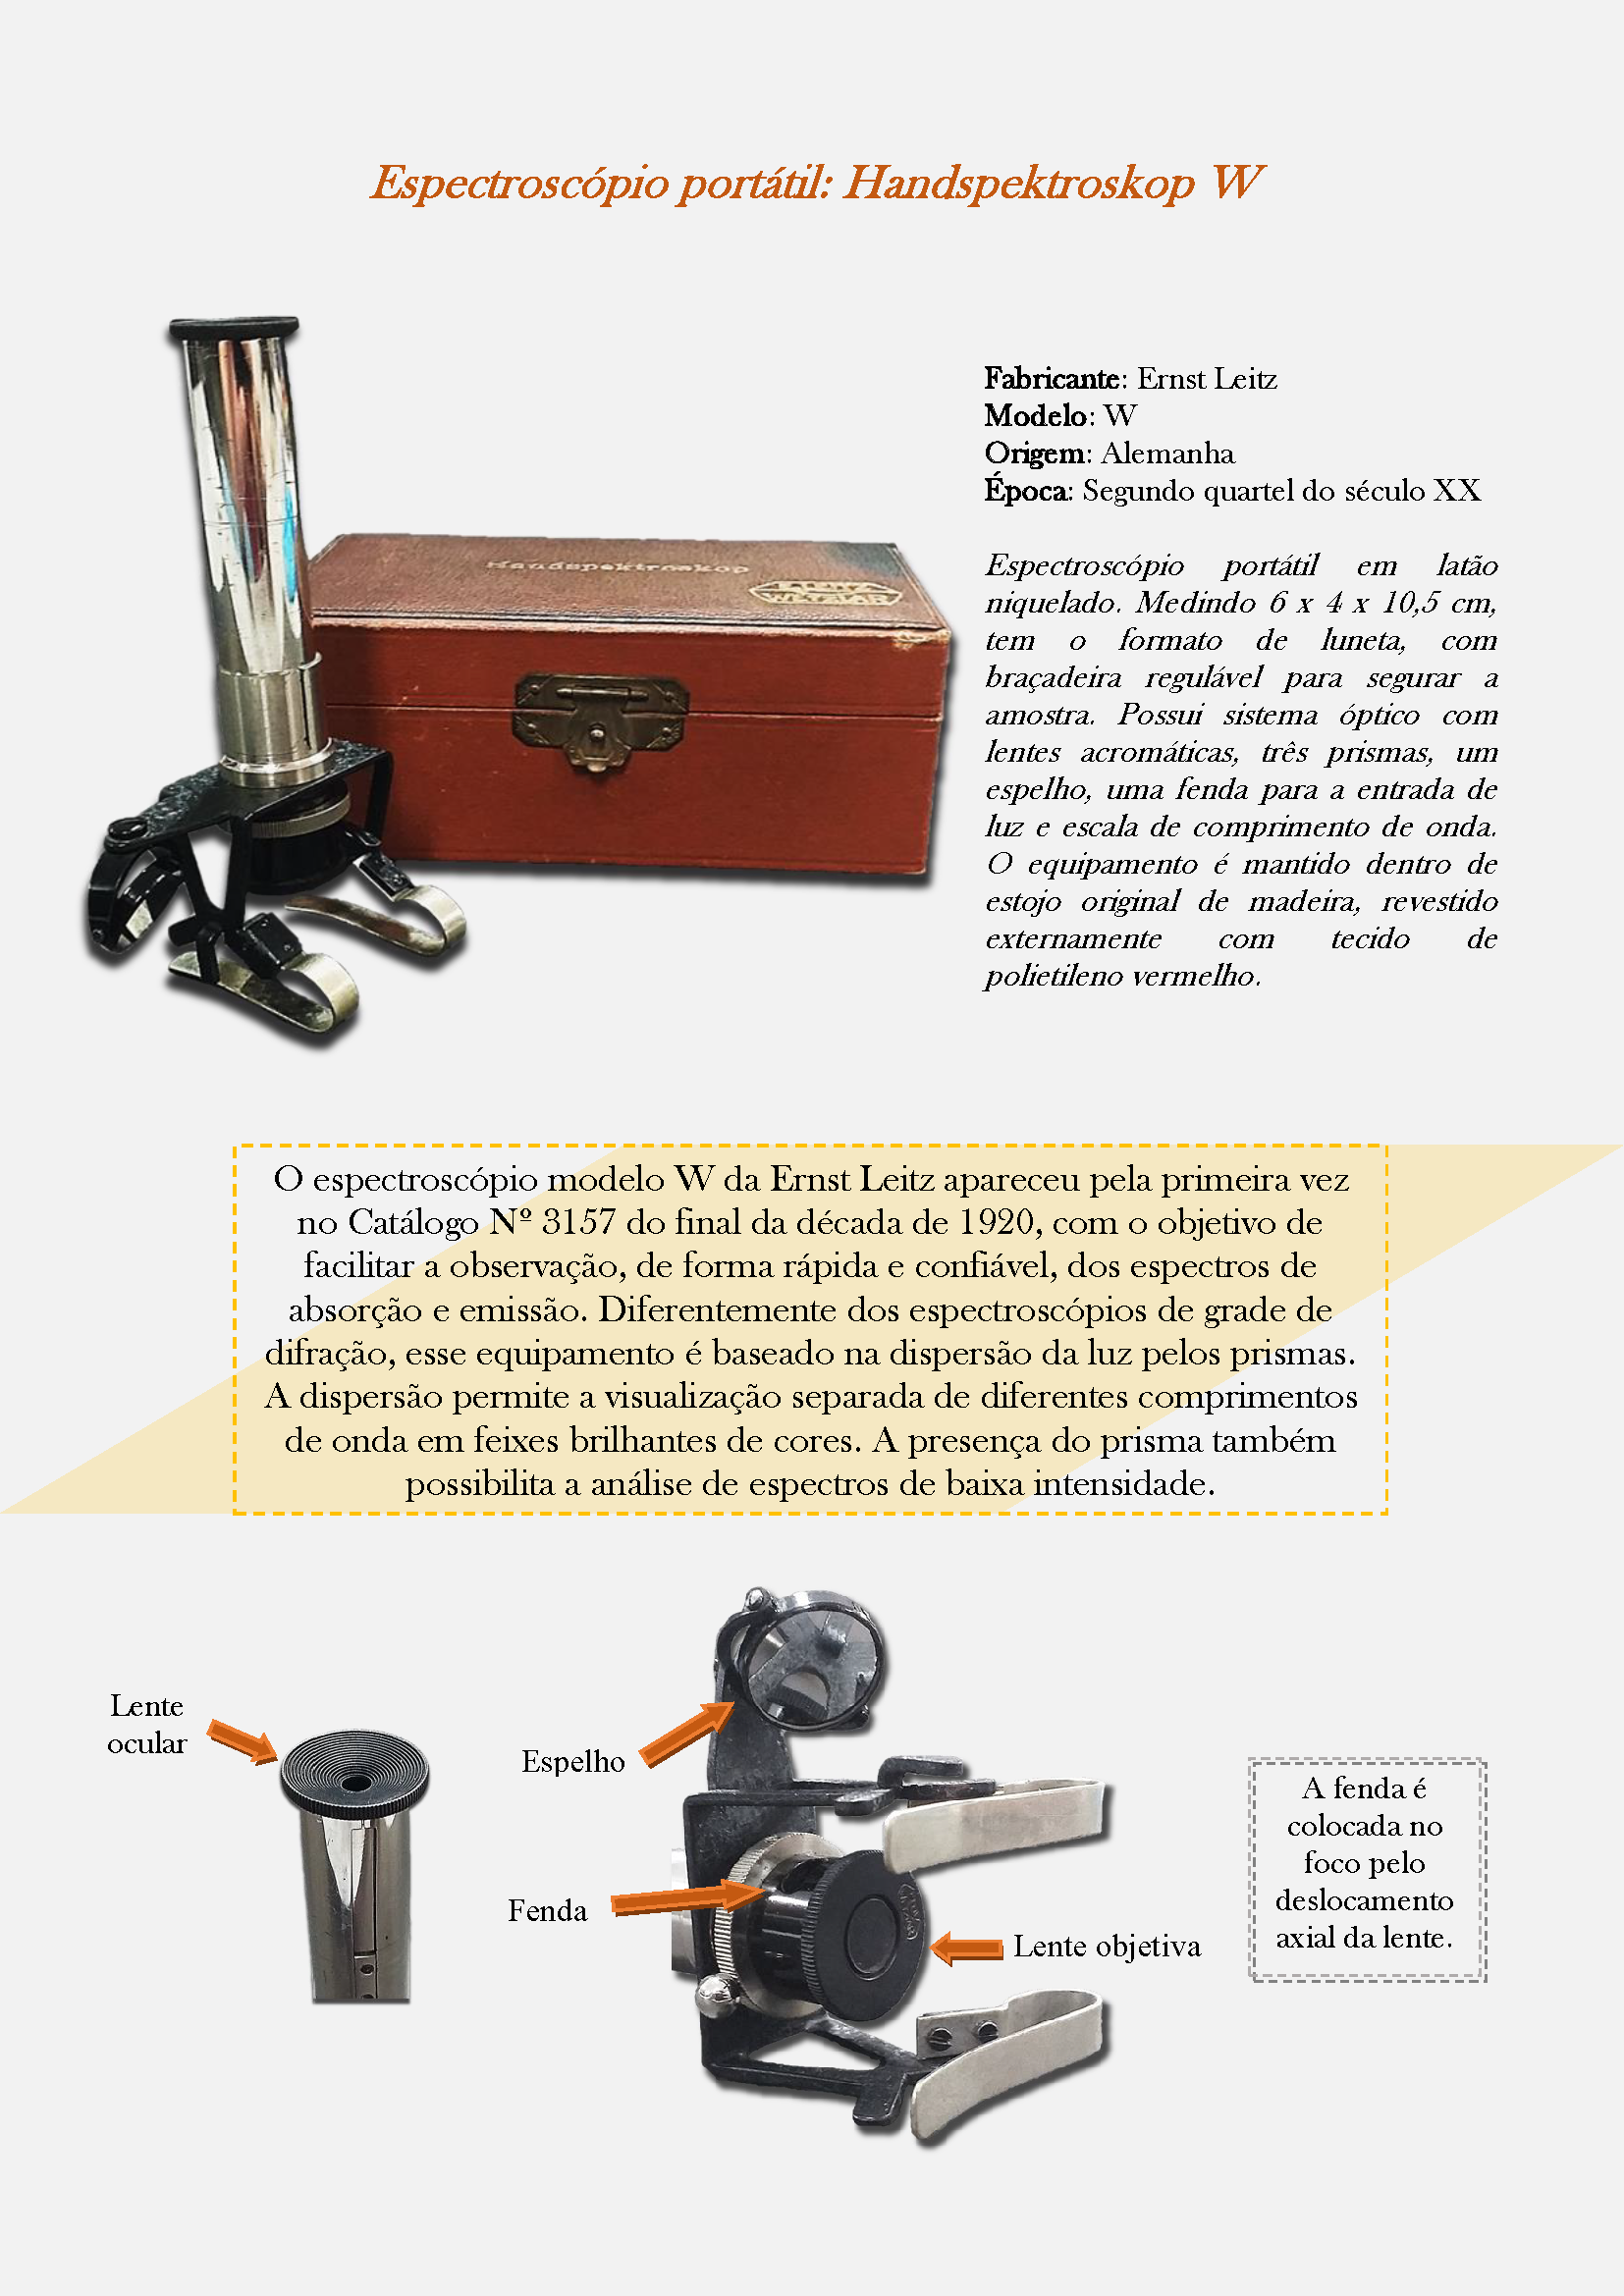 II.1 - Handspektroskop W - Espectroscópio portátil (2019.84) - Final (1) - Copia_Página_1